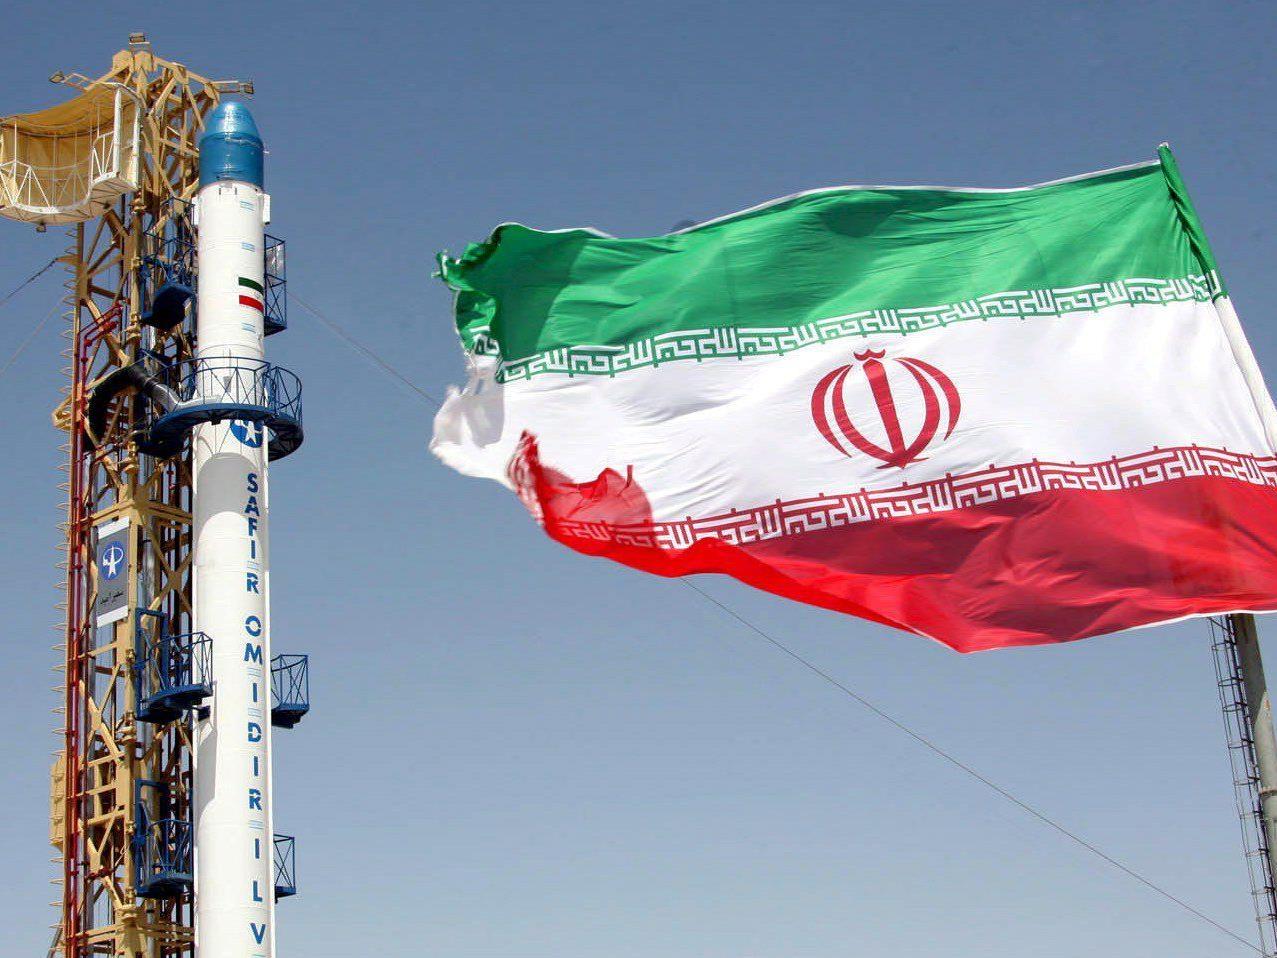 Der Iran betreibt ein engagiertes Raketen- und Raumfahrtprogramm.